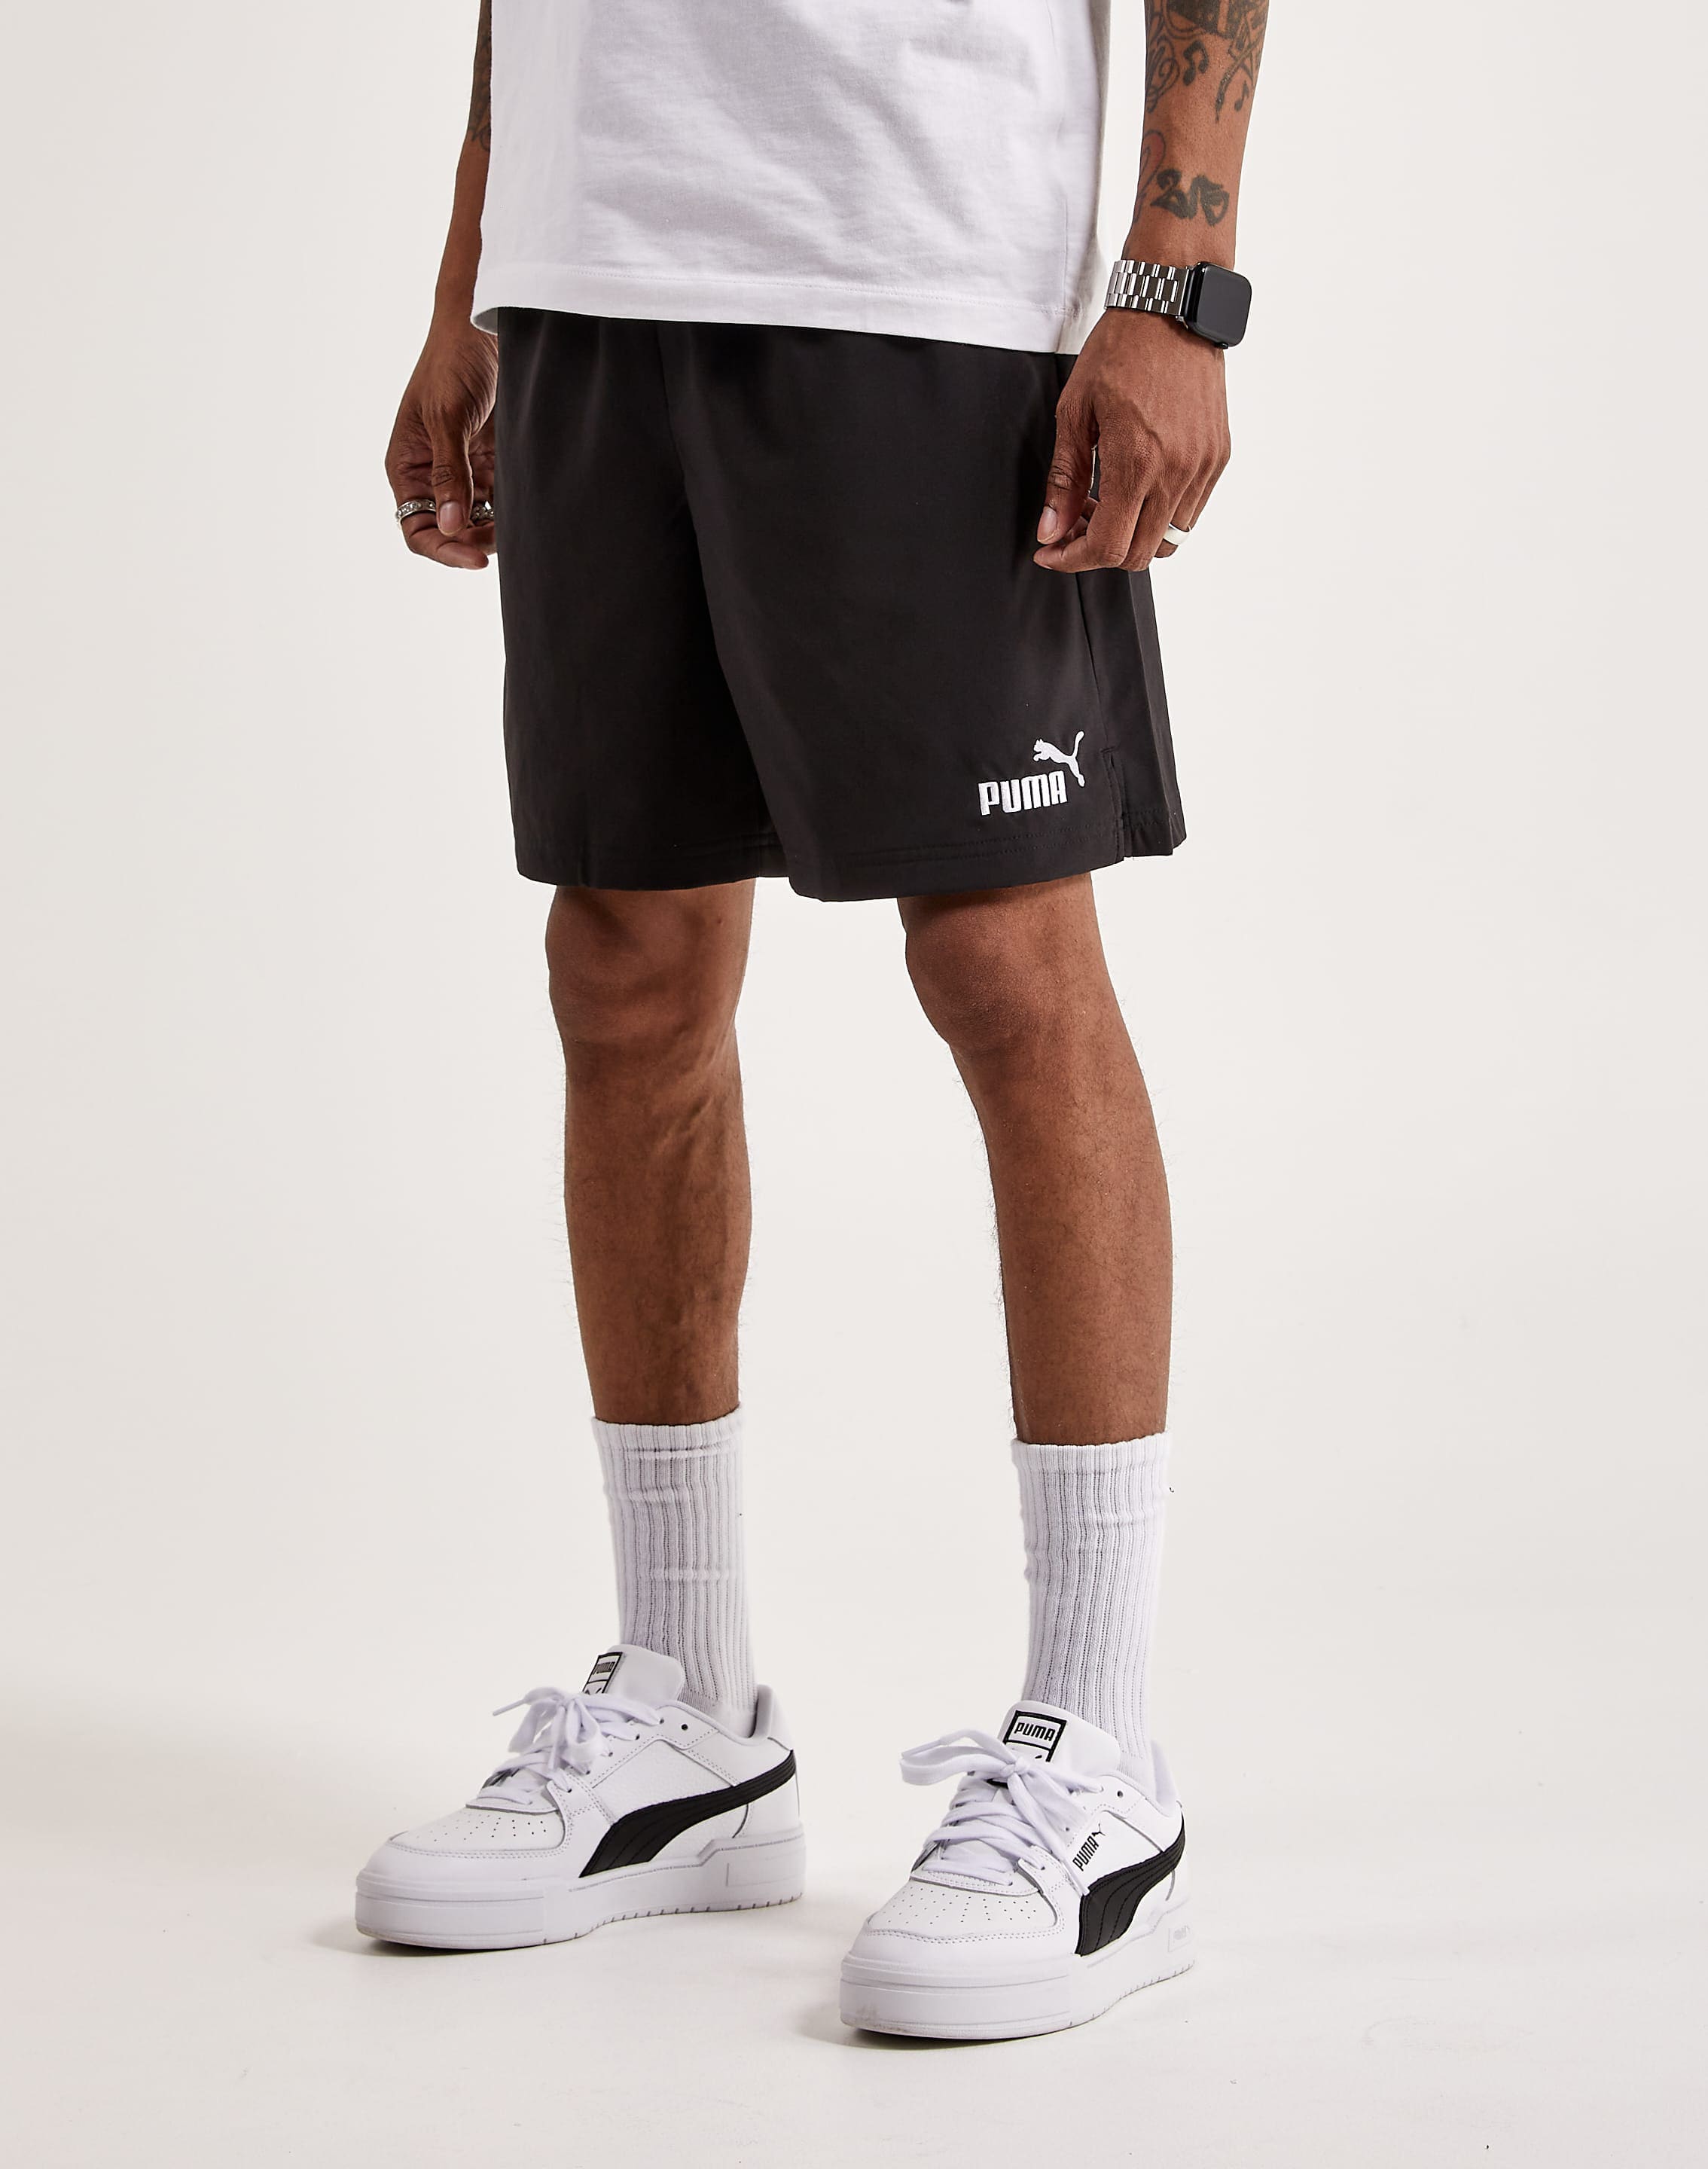 Essentials DTLR Puma Shorts – Woven